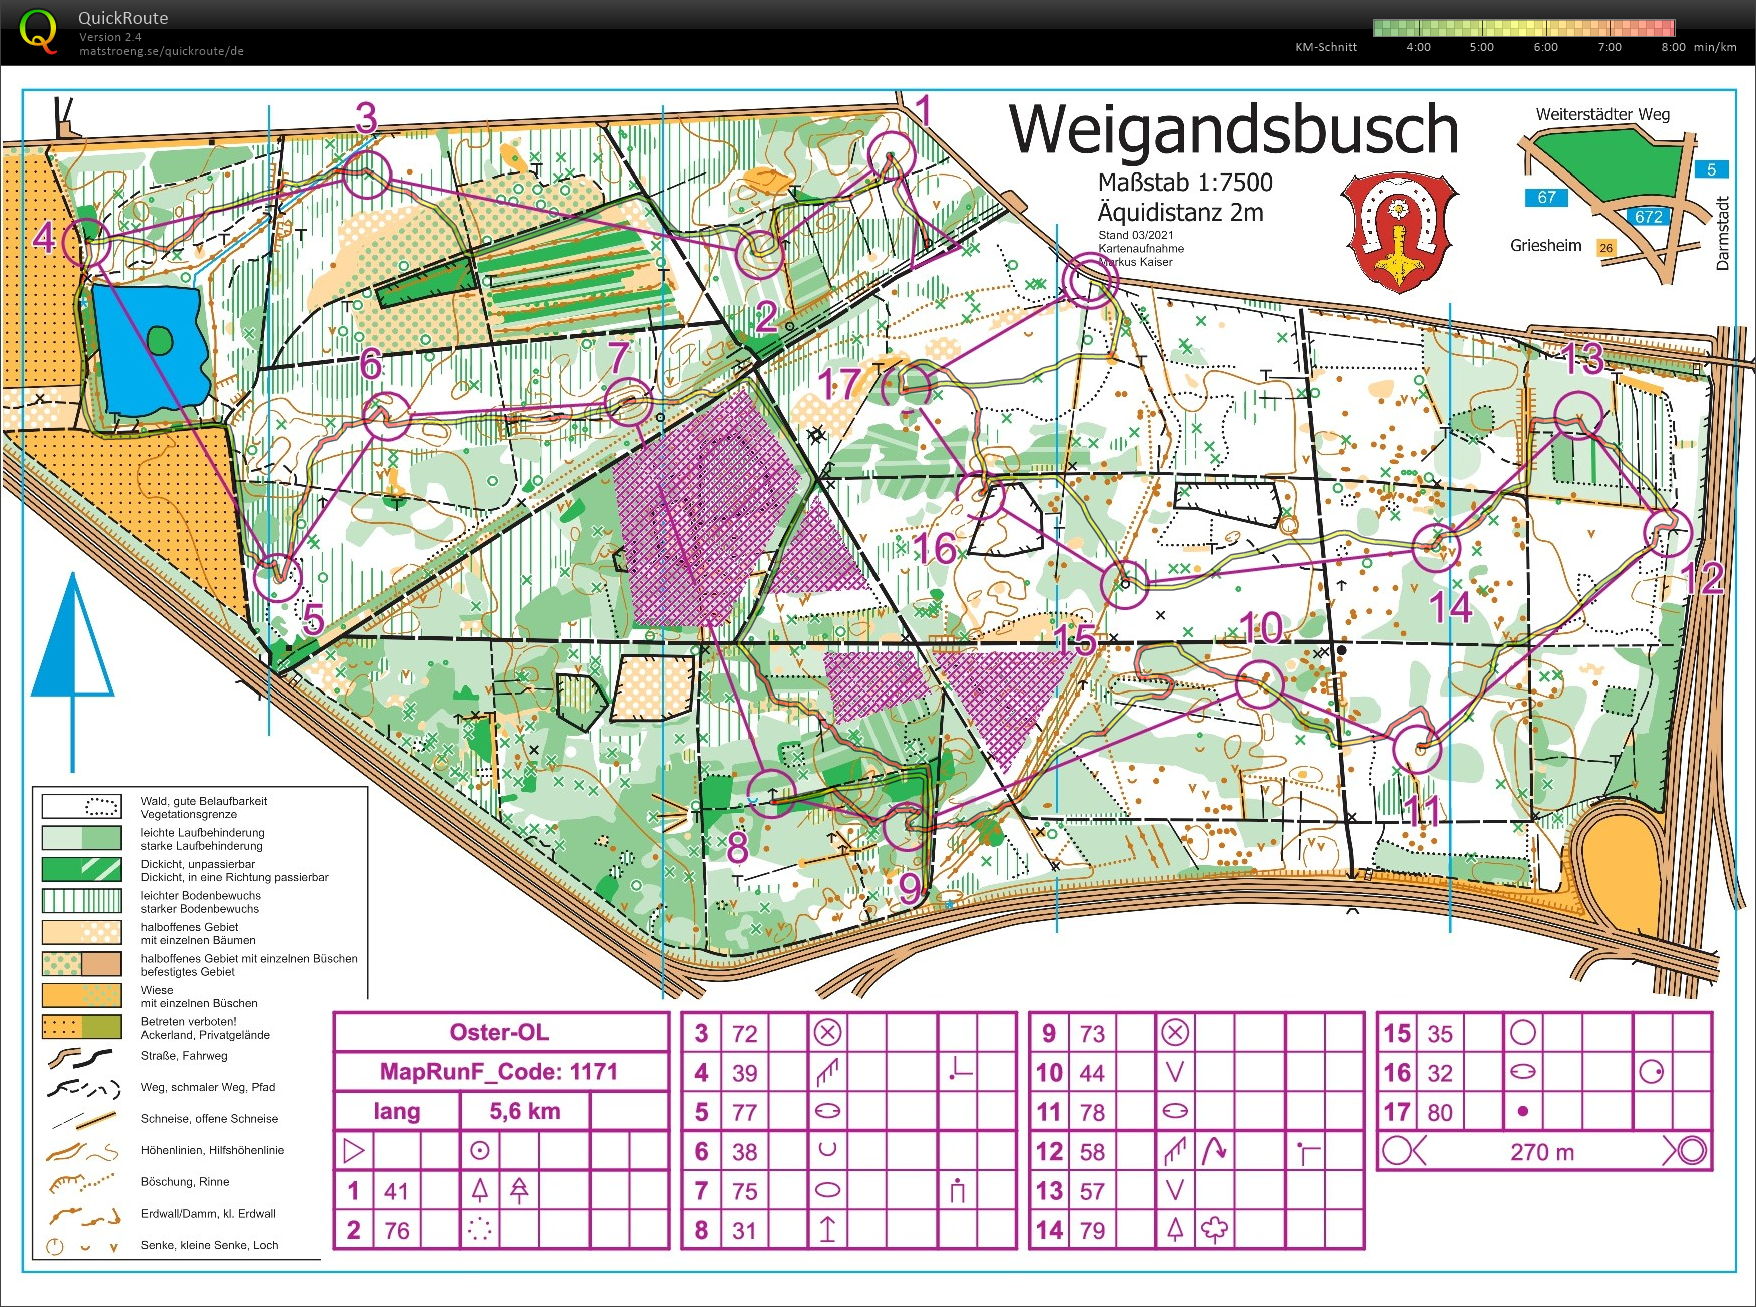 Training Weigandsbusch (09.05.2021)